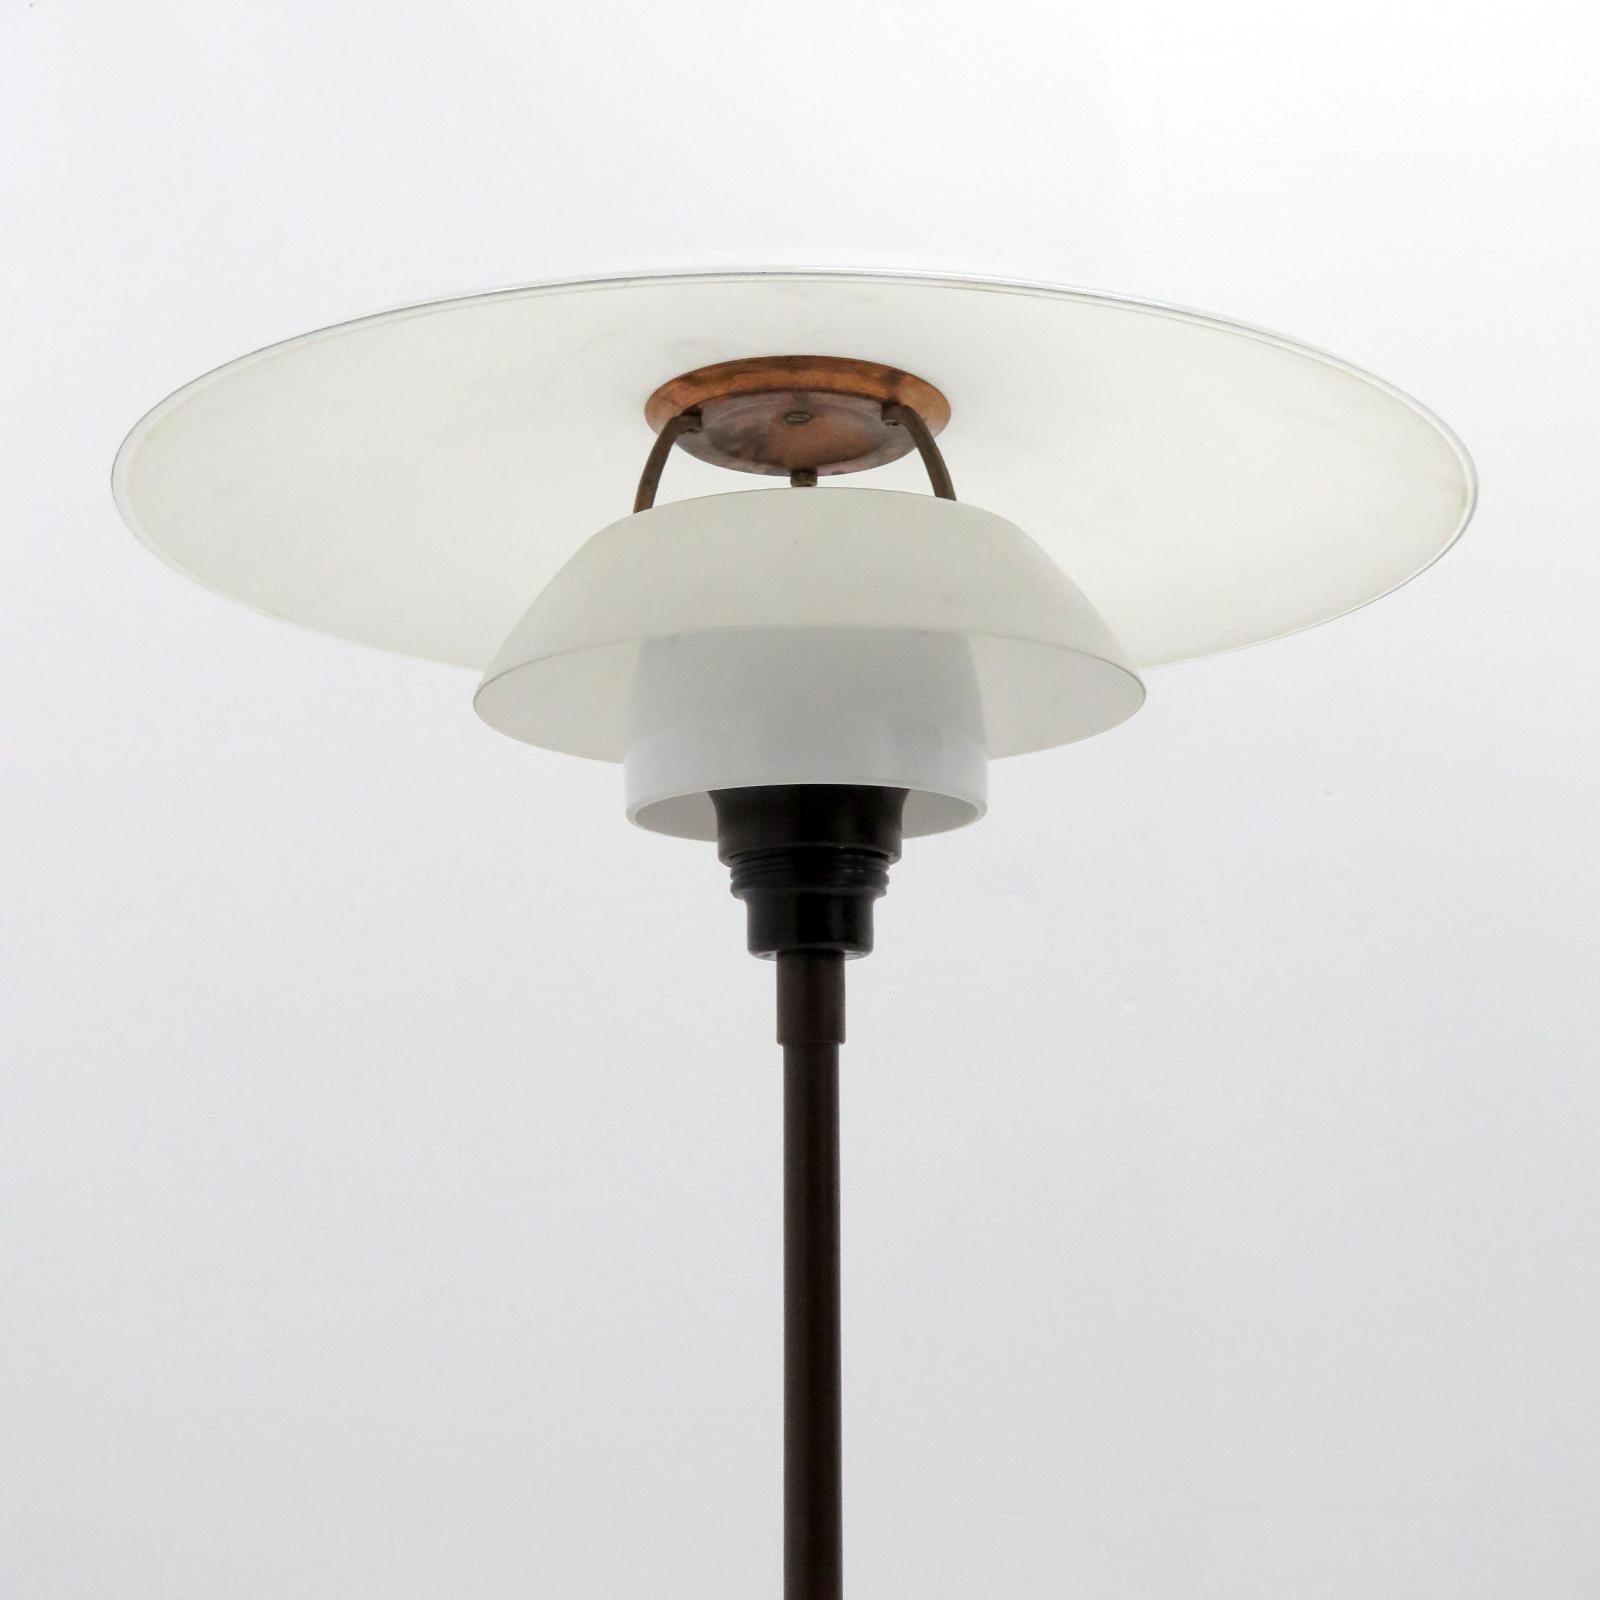 Scandinavian Modern Poul Henningsen PH 4/3 Floor Lamp, 1930 For Sale